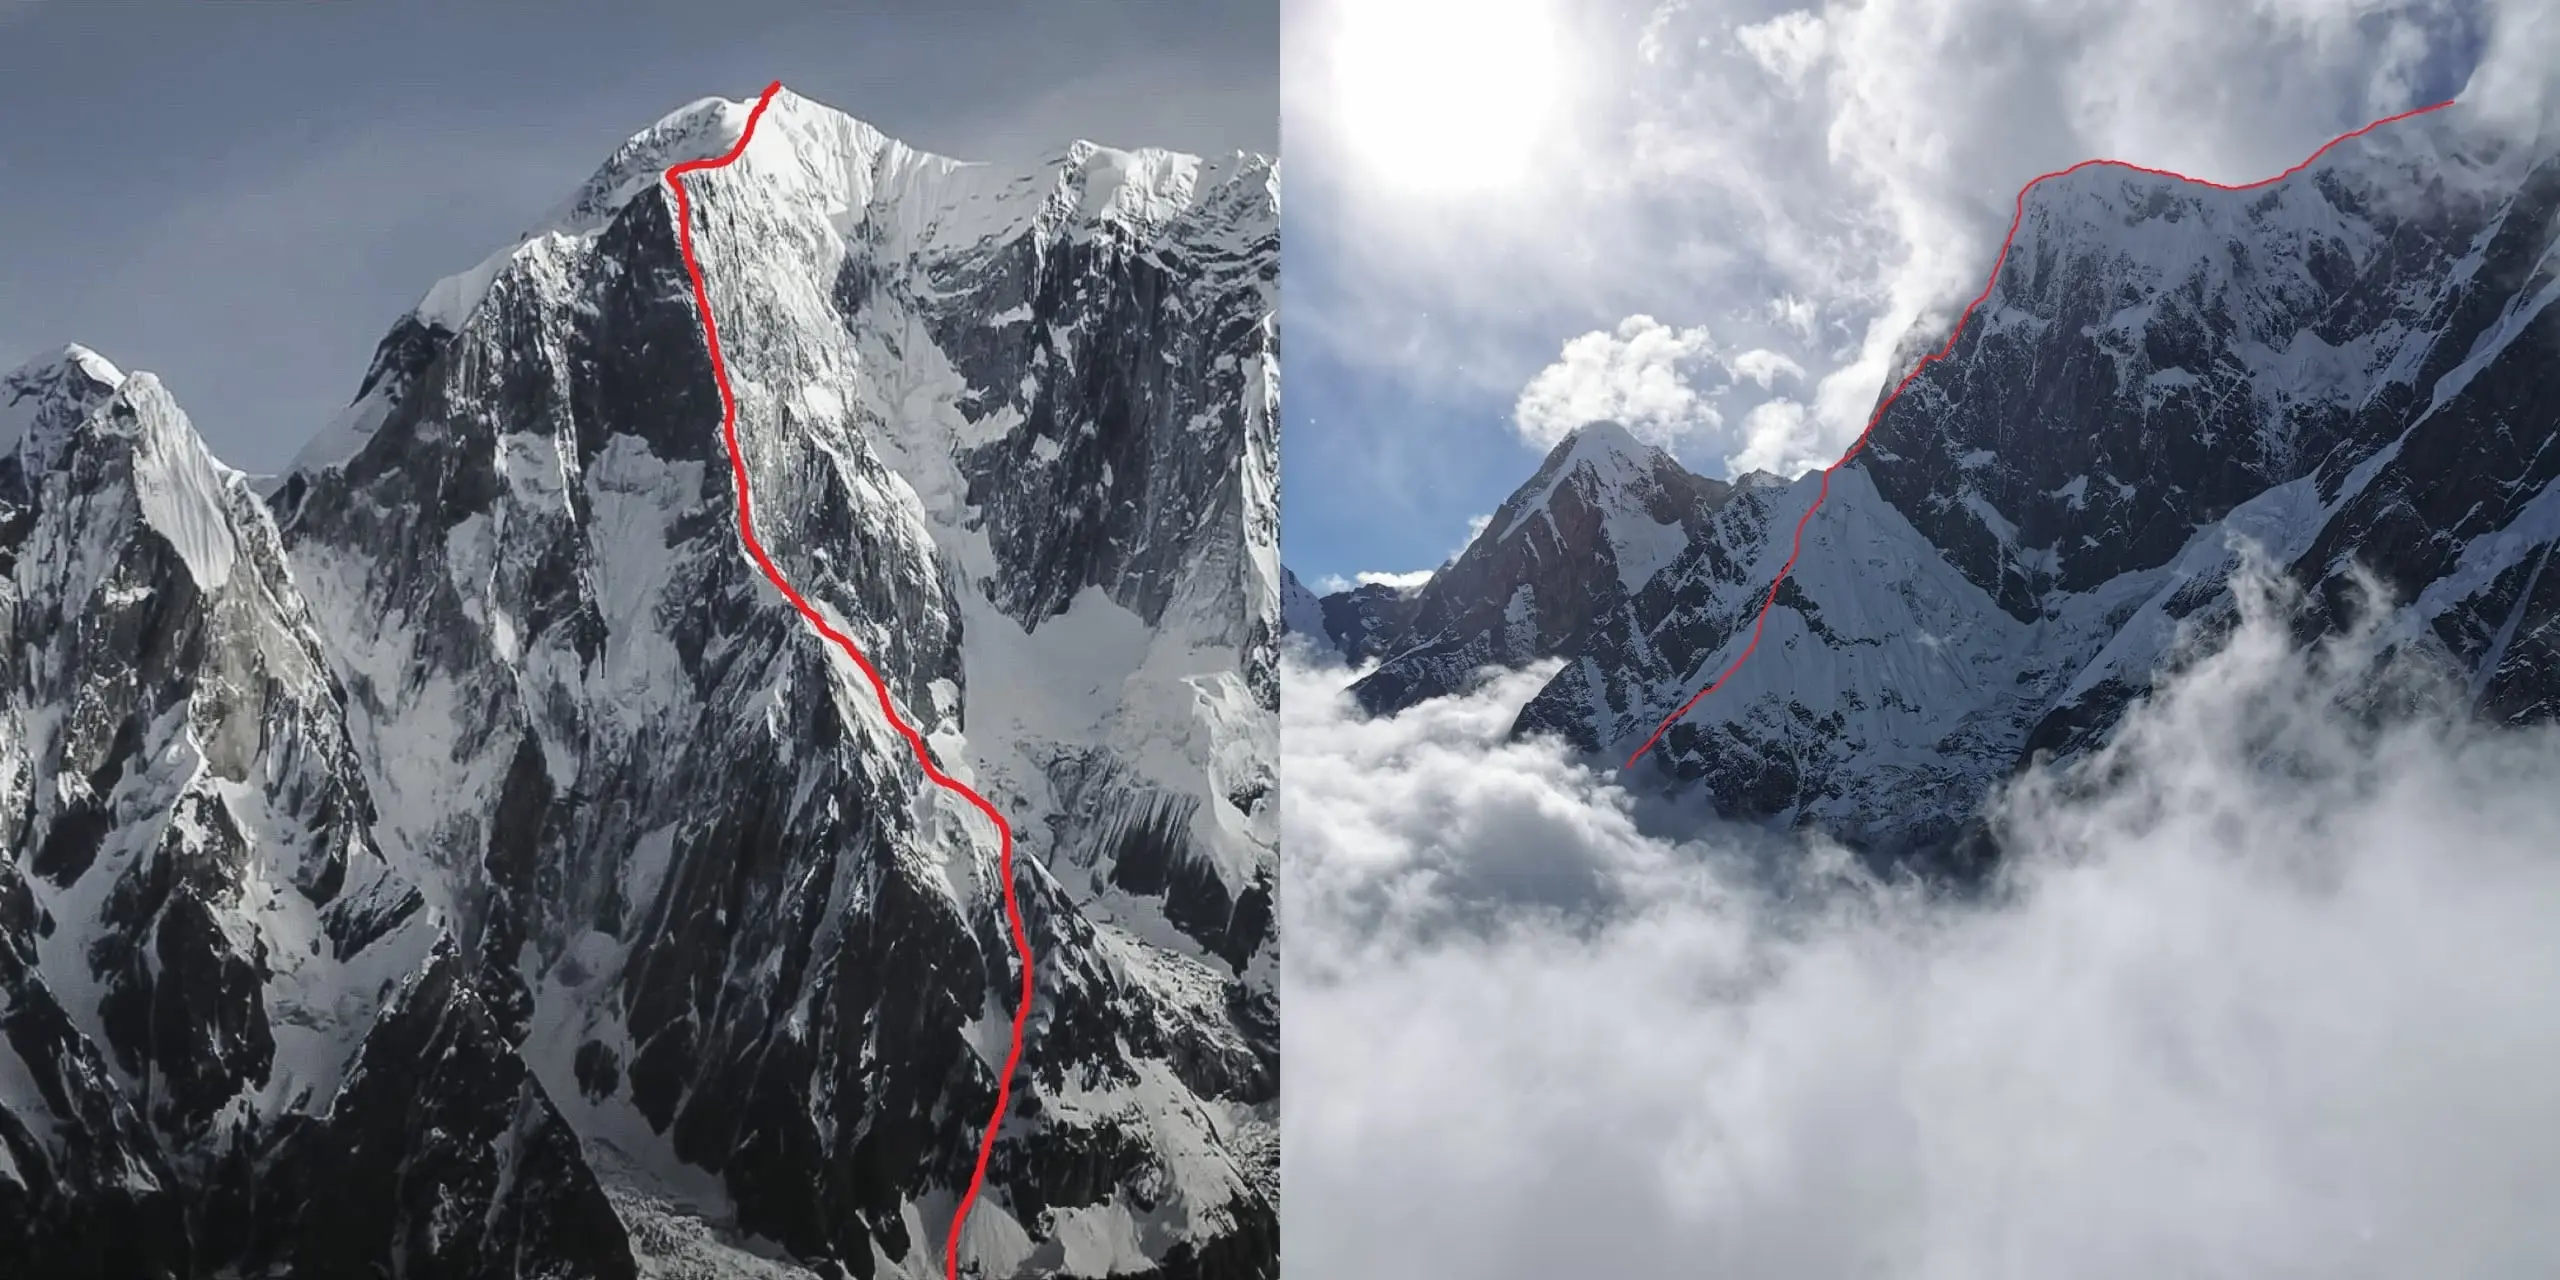  маршрут "Терпіння" ("Patience") по раніше ніким не пройденому південно-східному гребню гори Аннапурна III (Annapurna III 7555 метрів) у Непалі